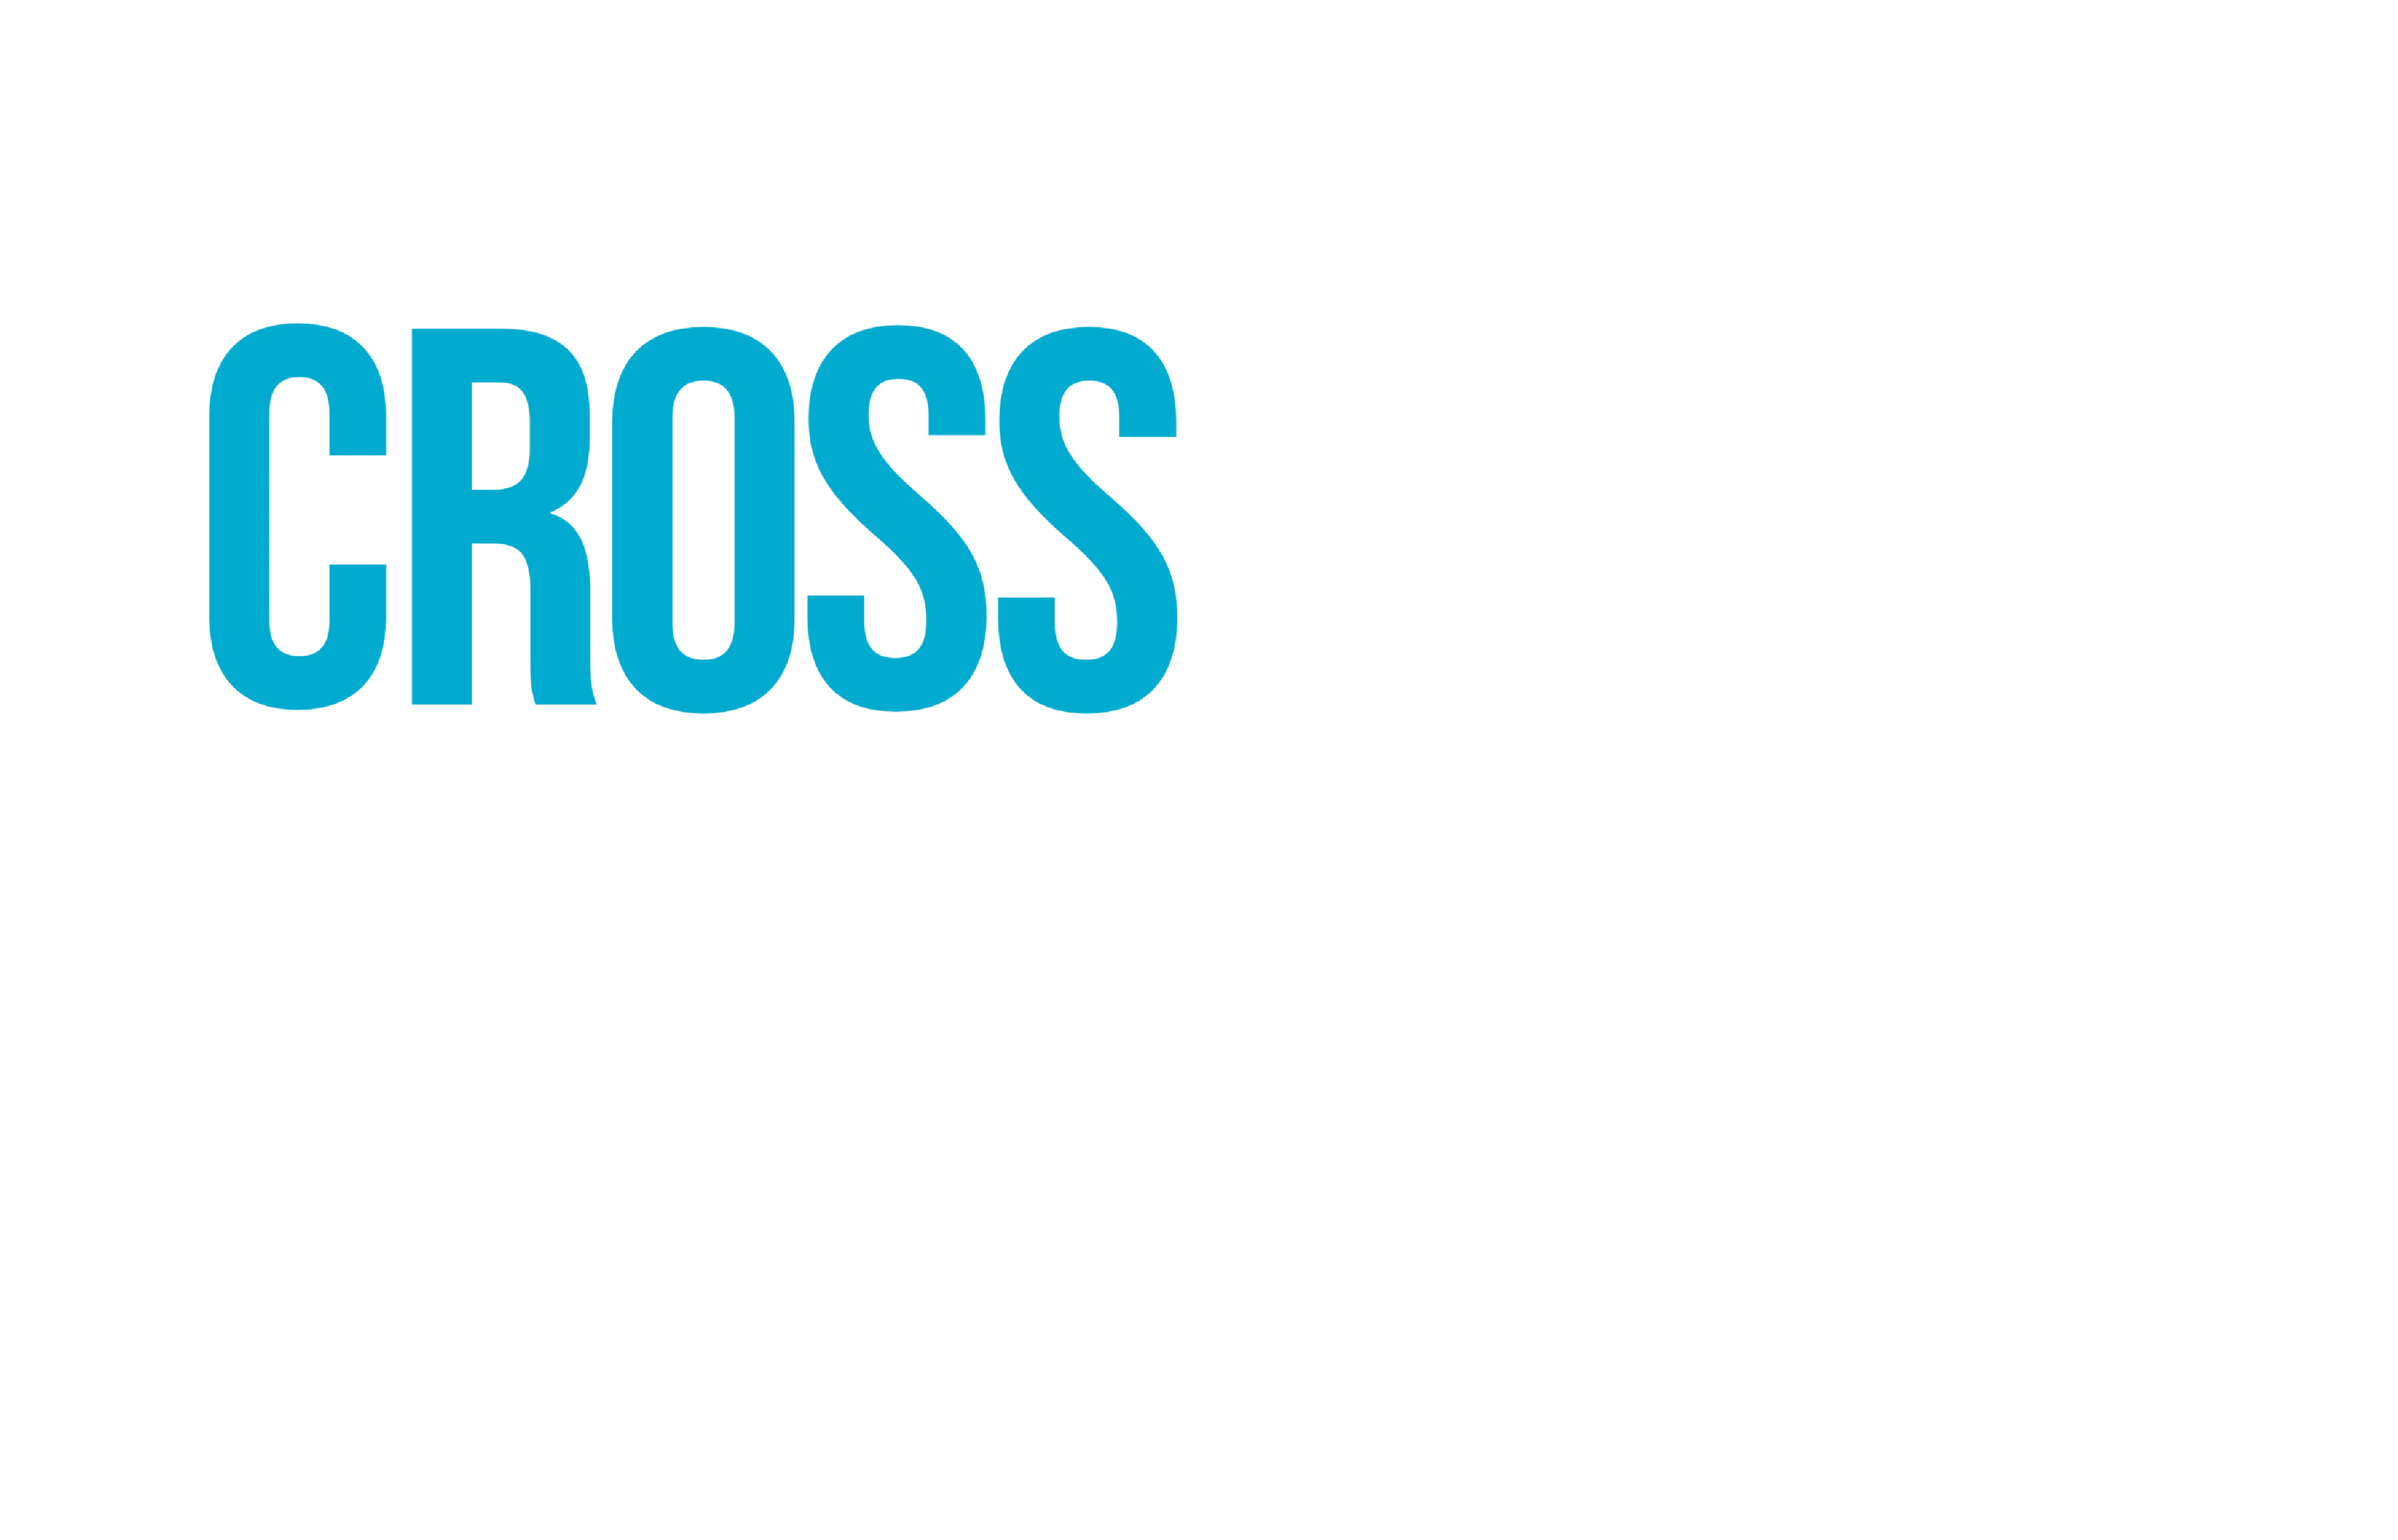 Crossroads Baptist Church Beggs OK